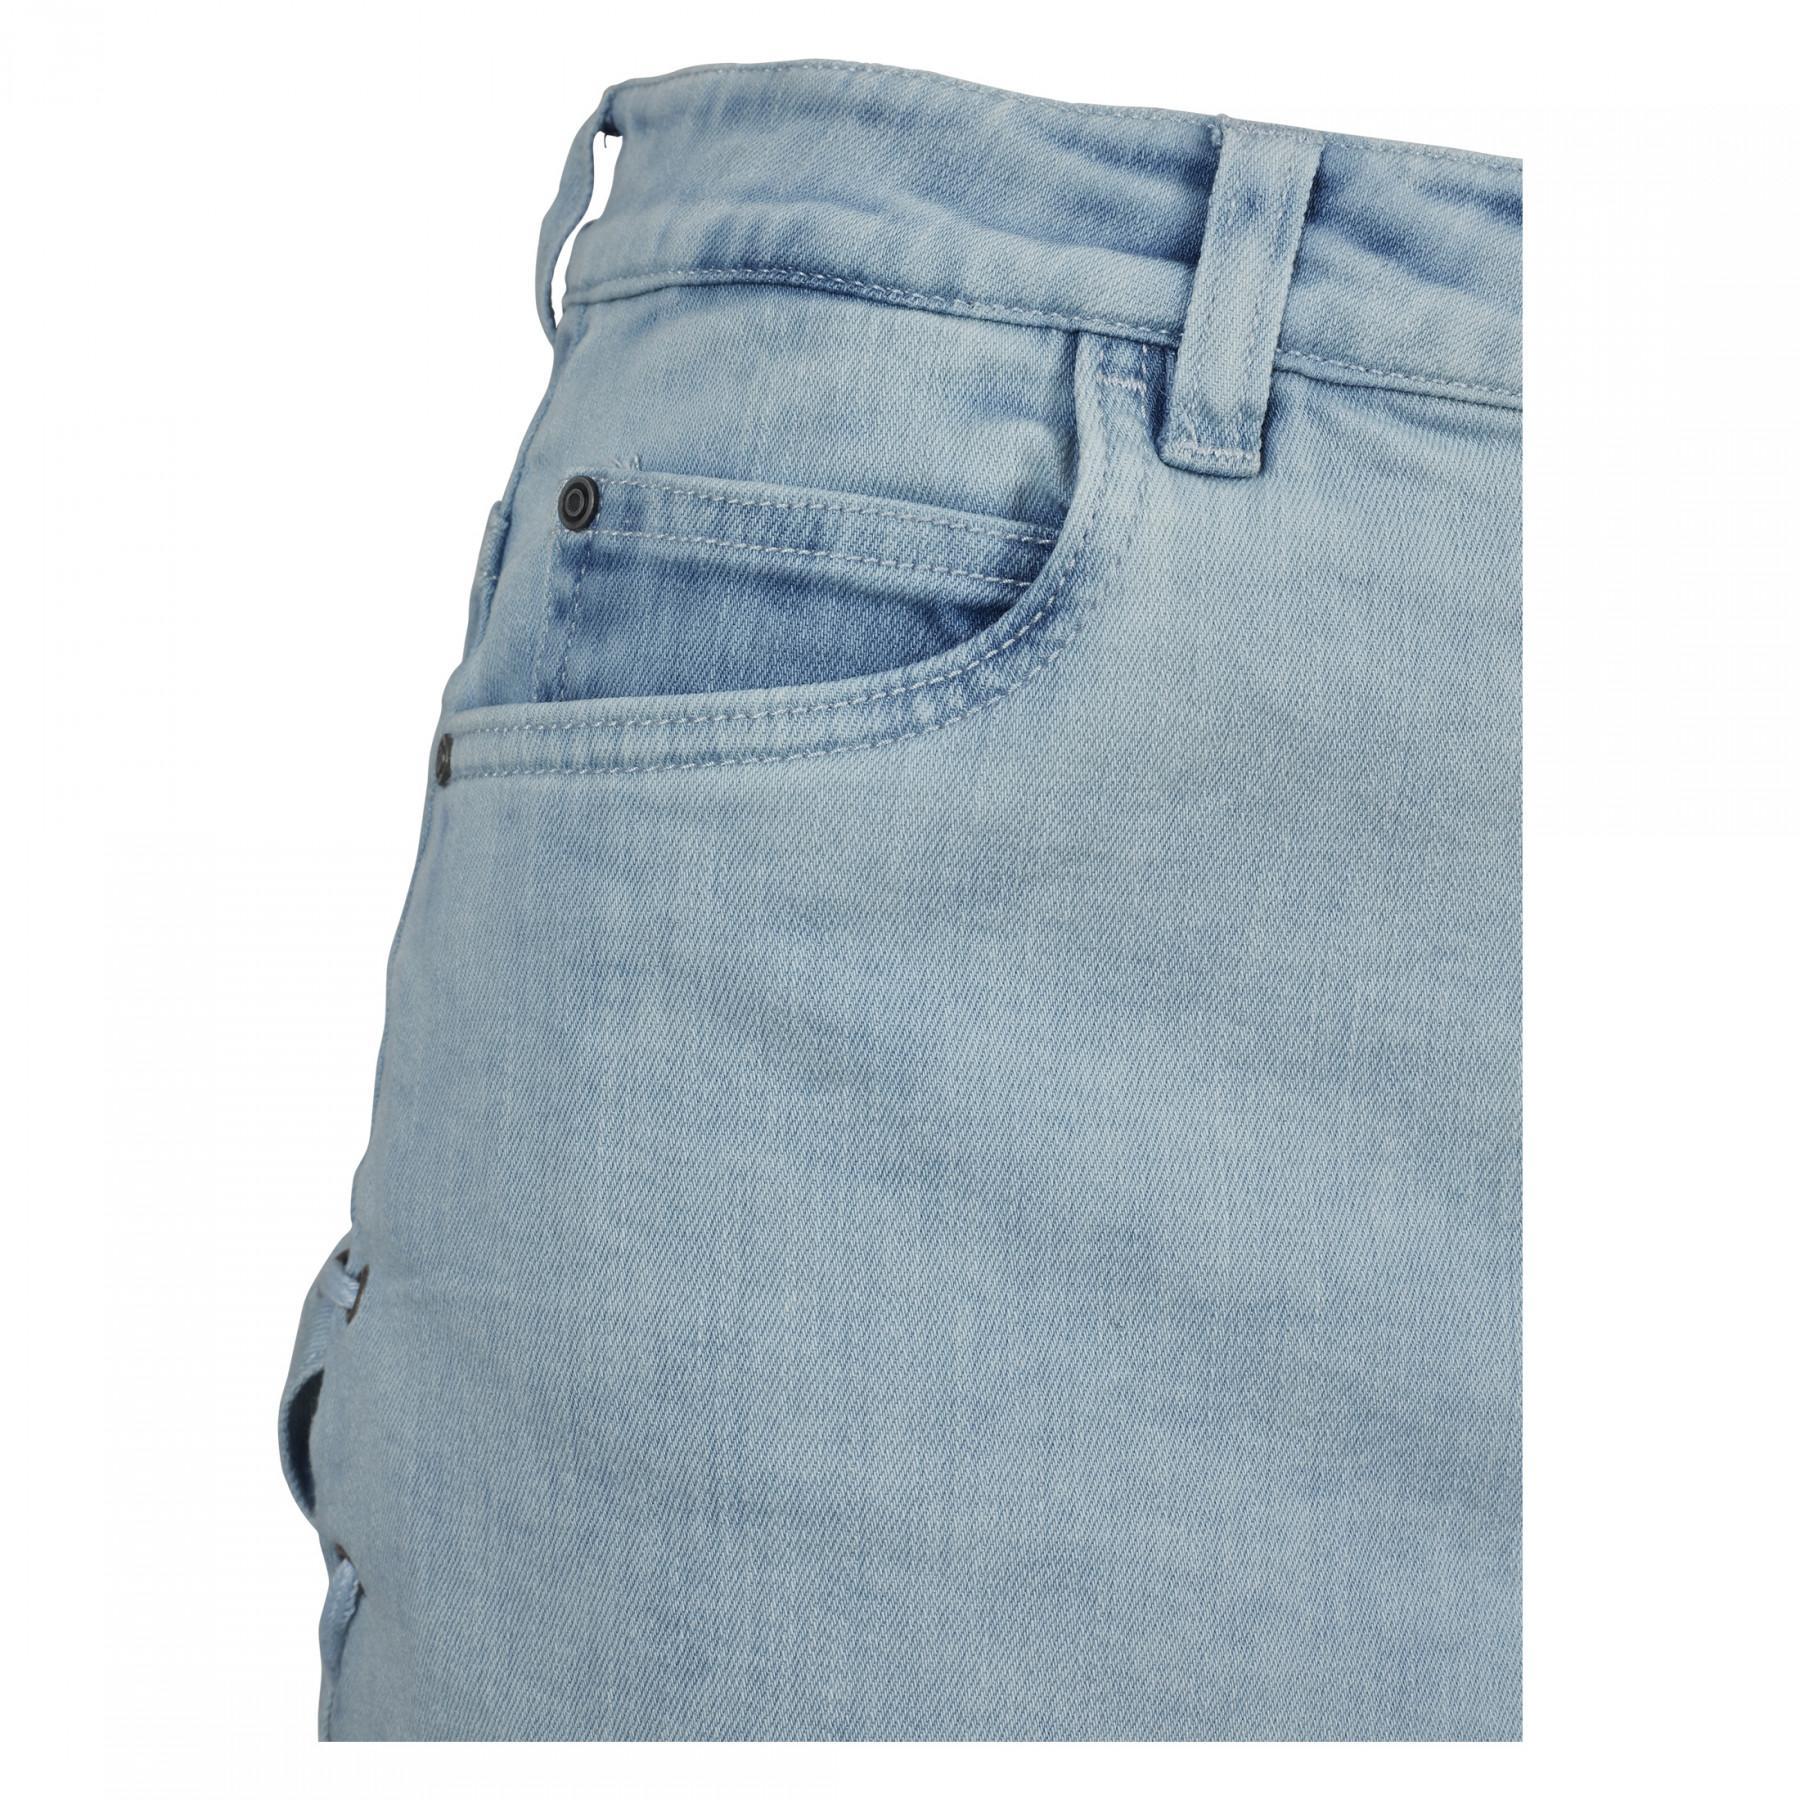 Spódnica damska miejska klasyczna jeansowa sznurowana